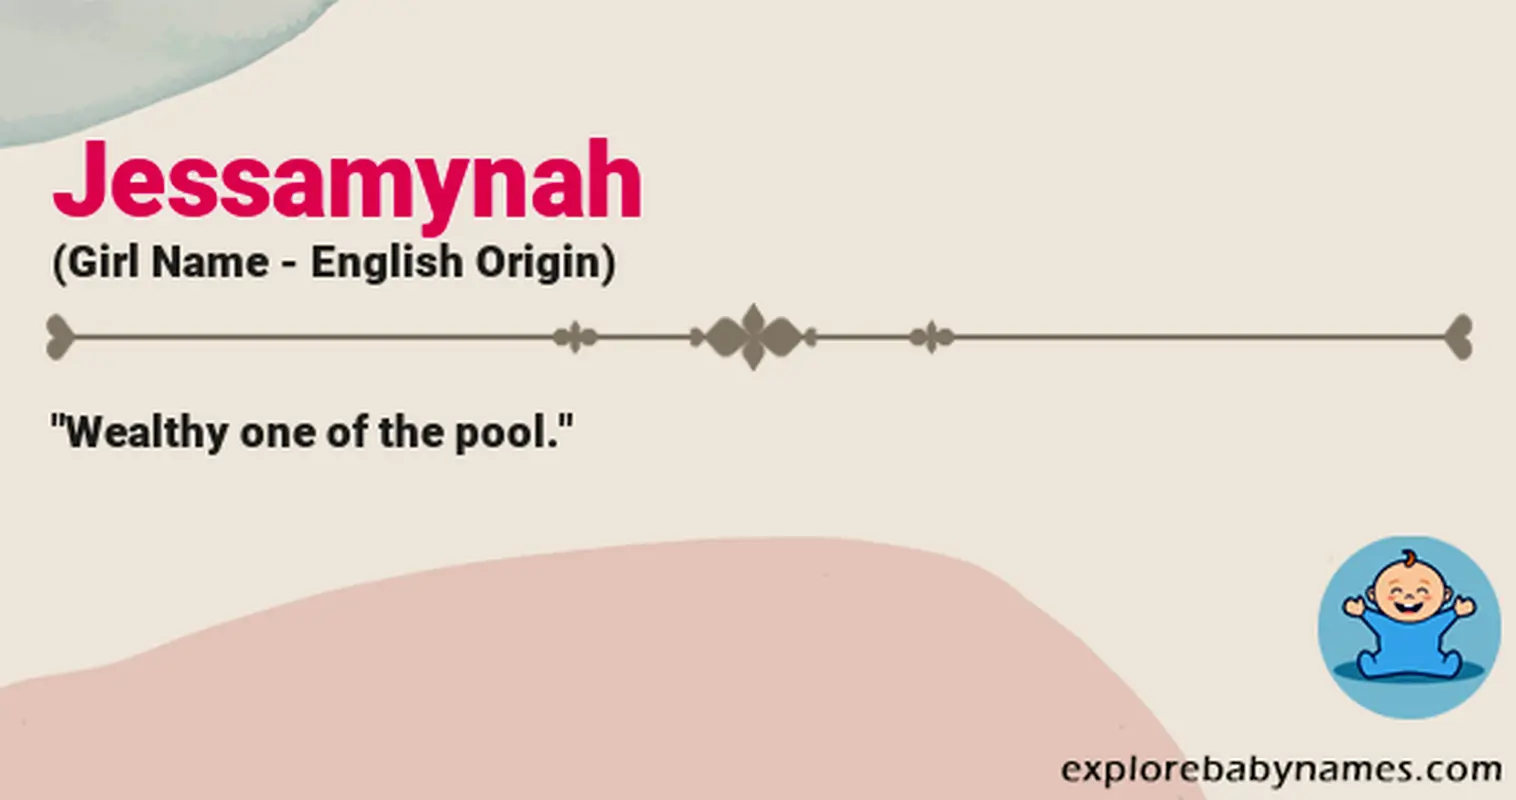 Meaning of Jessamynah